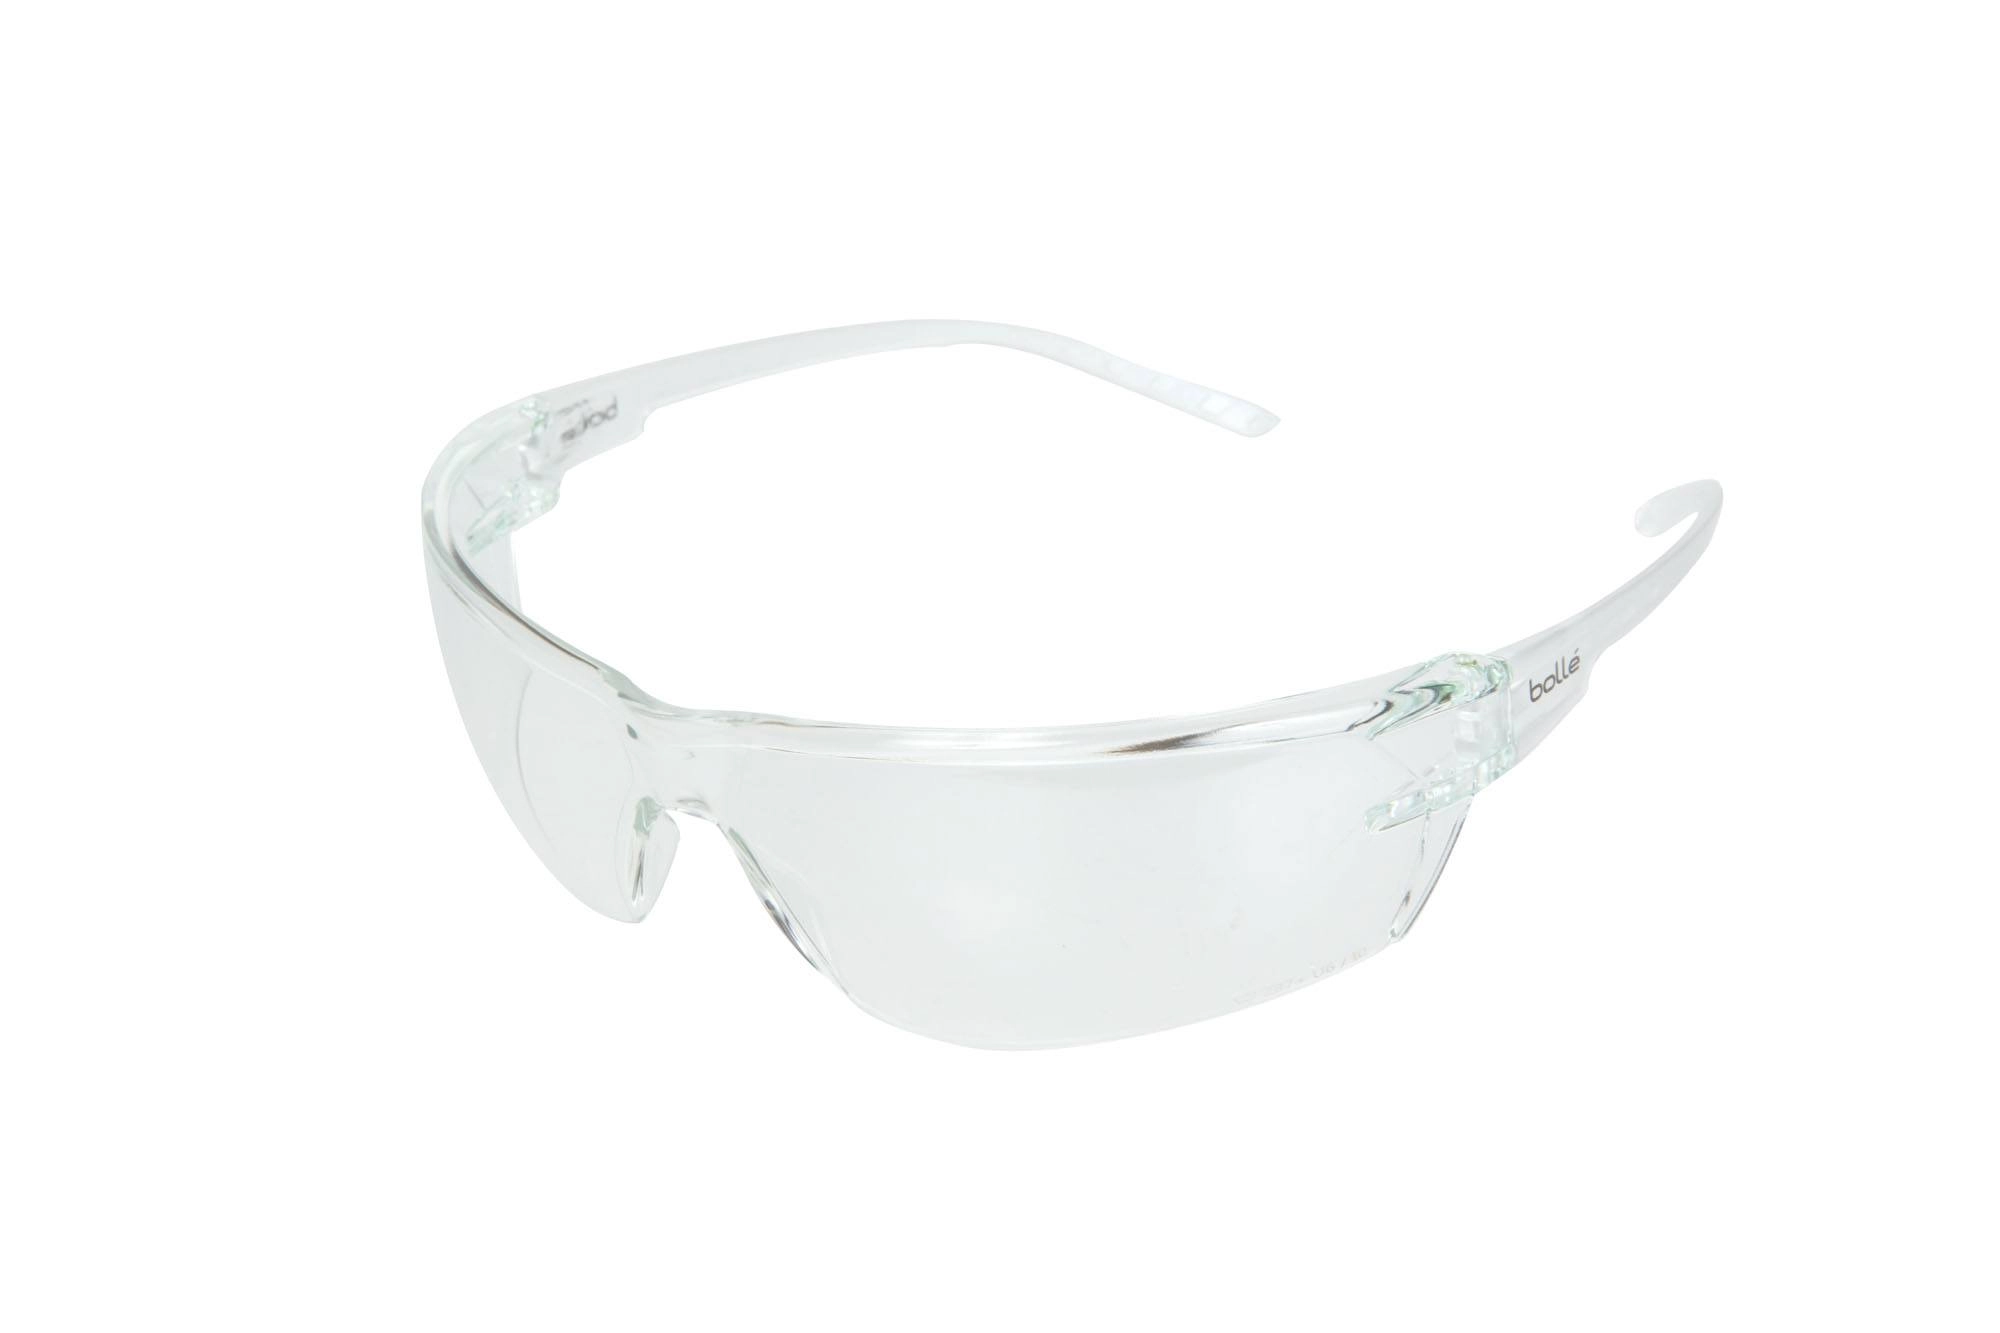 Bolle Safety - Gafas de protección s10 - Transparente